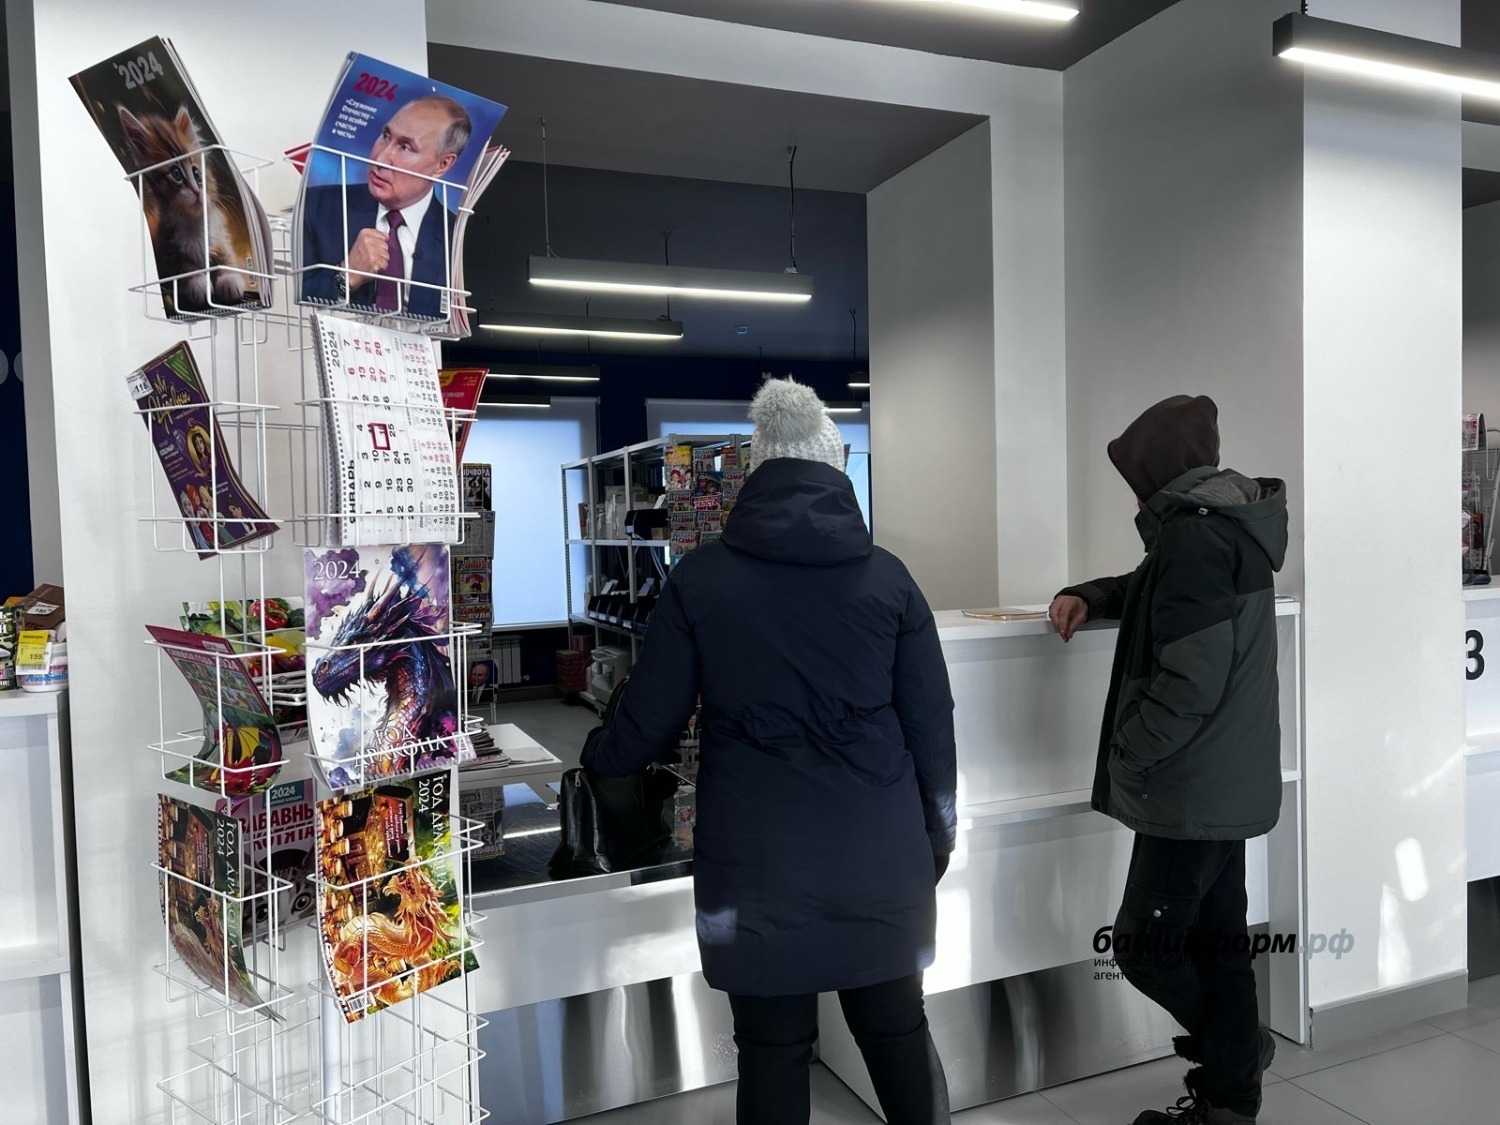 В Башкирии  открыли  35 новых отделений почтовой связи